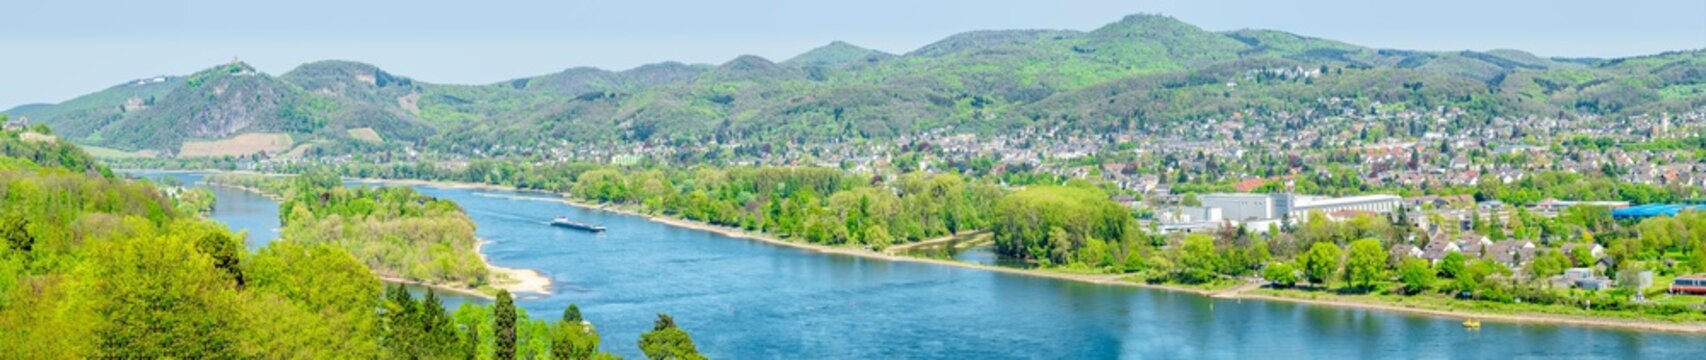 Panorama des Rheintales bei Bad Honnef